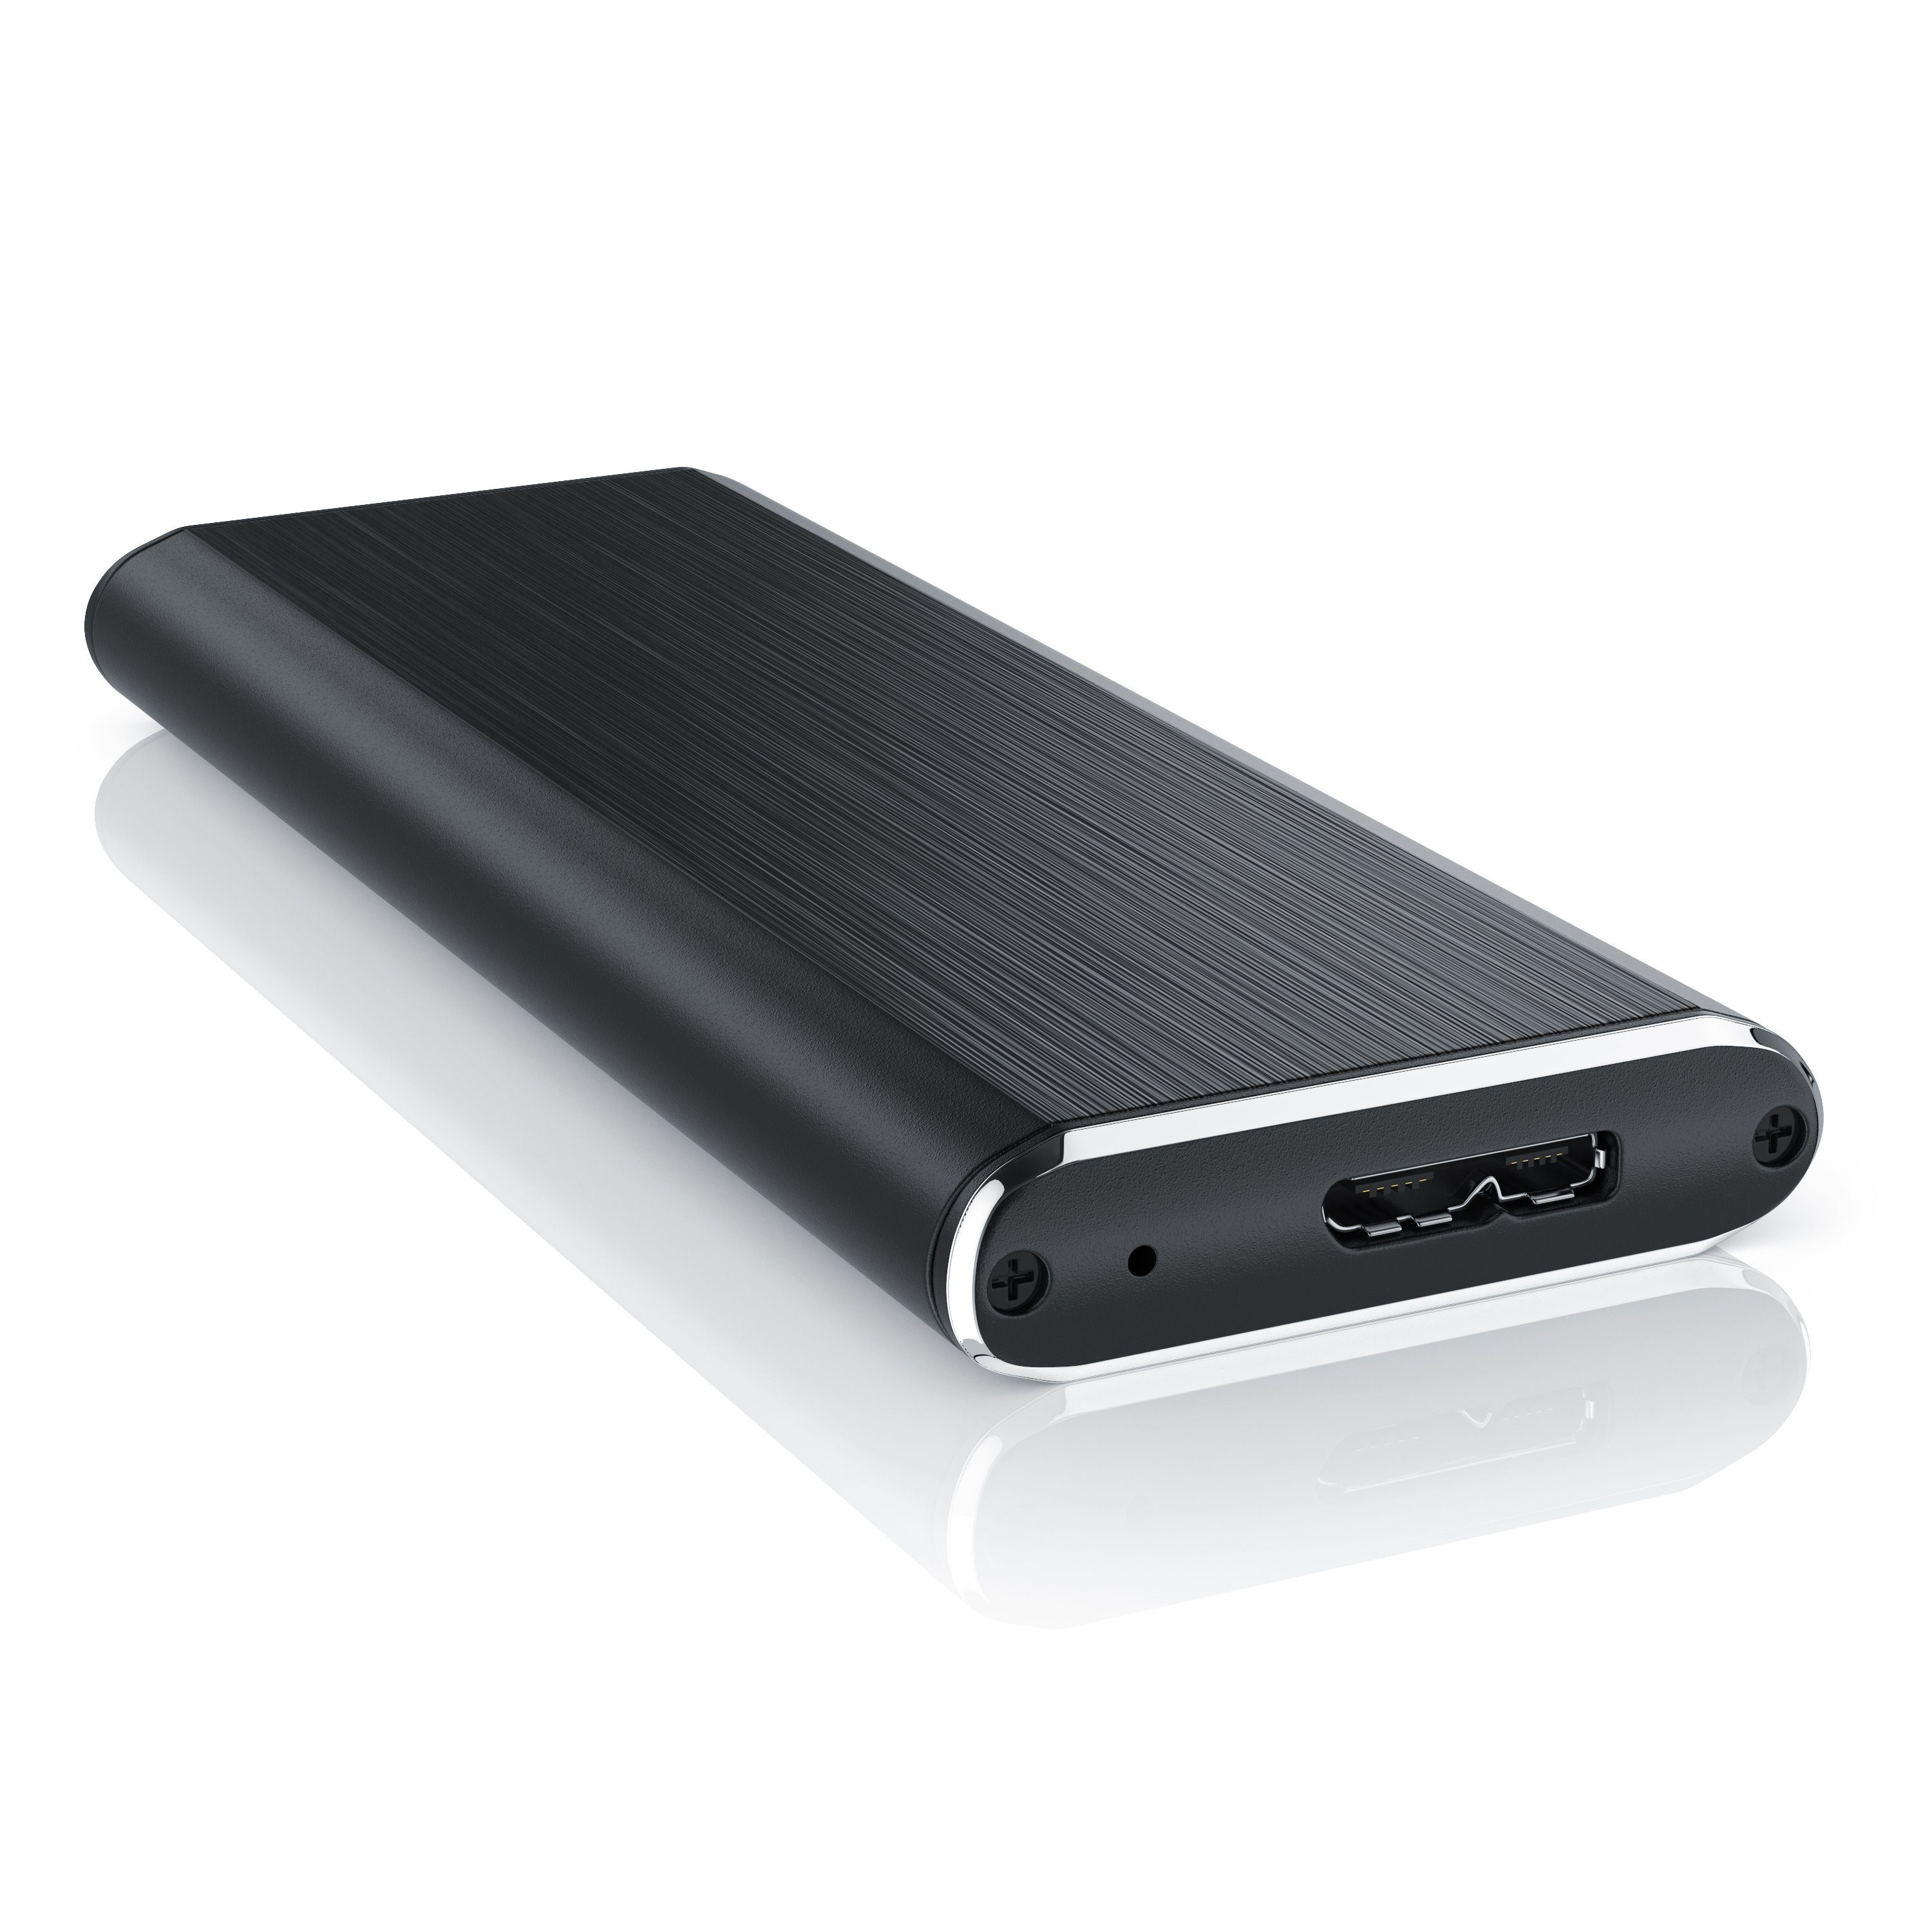 CSL Festplatten-Gehäuse, USB 3.0 m.2 SSD Festplattengehäuse für M.2 SSD im  2280, 2260, 2242 & 2230 Format online kaufen | OTTO